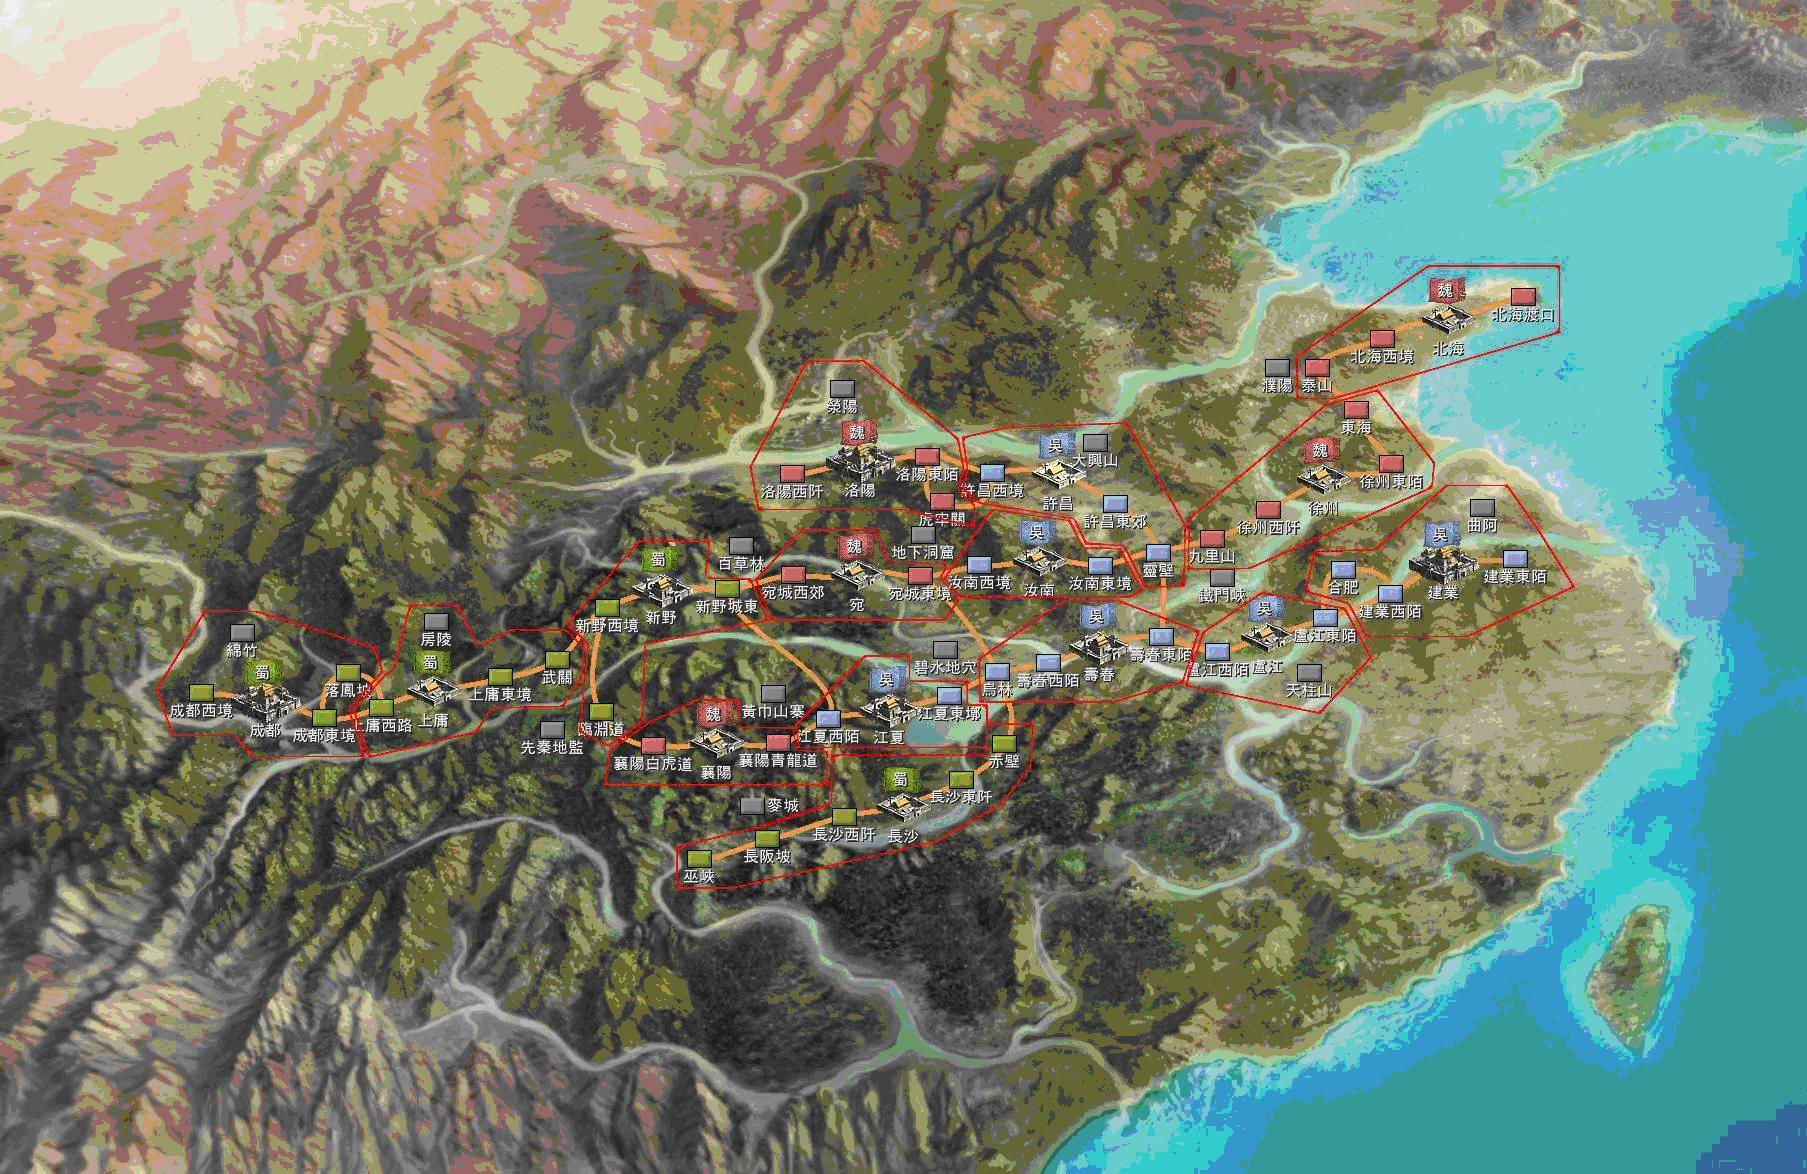 方舆 - 历史政区 - liucheng1972版最新南宋历史地图 - Powered by phpwind